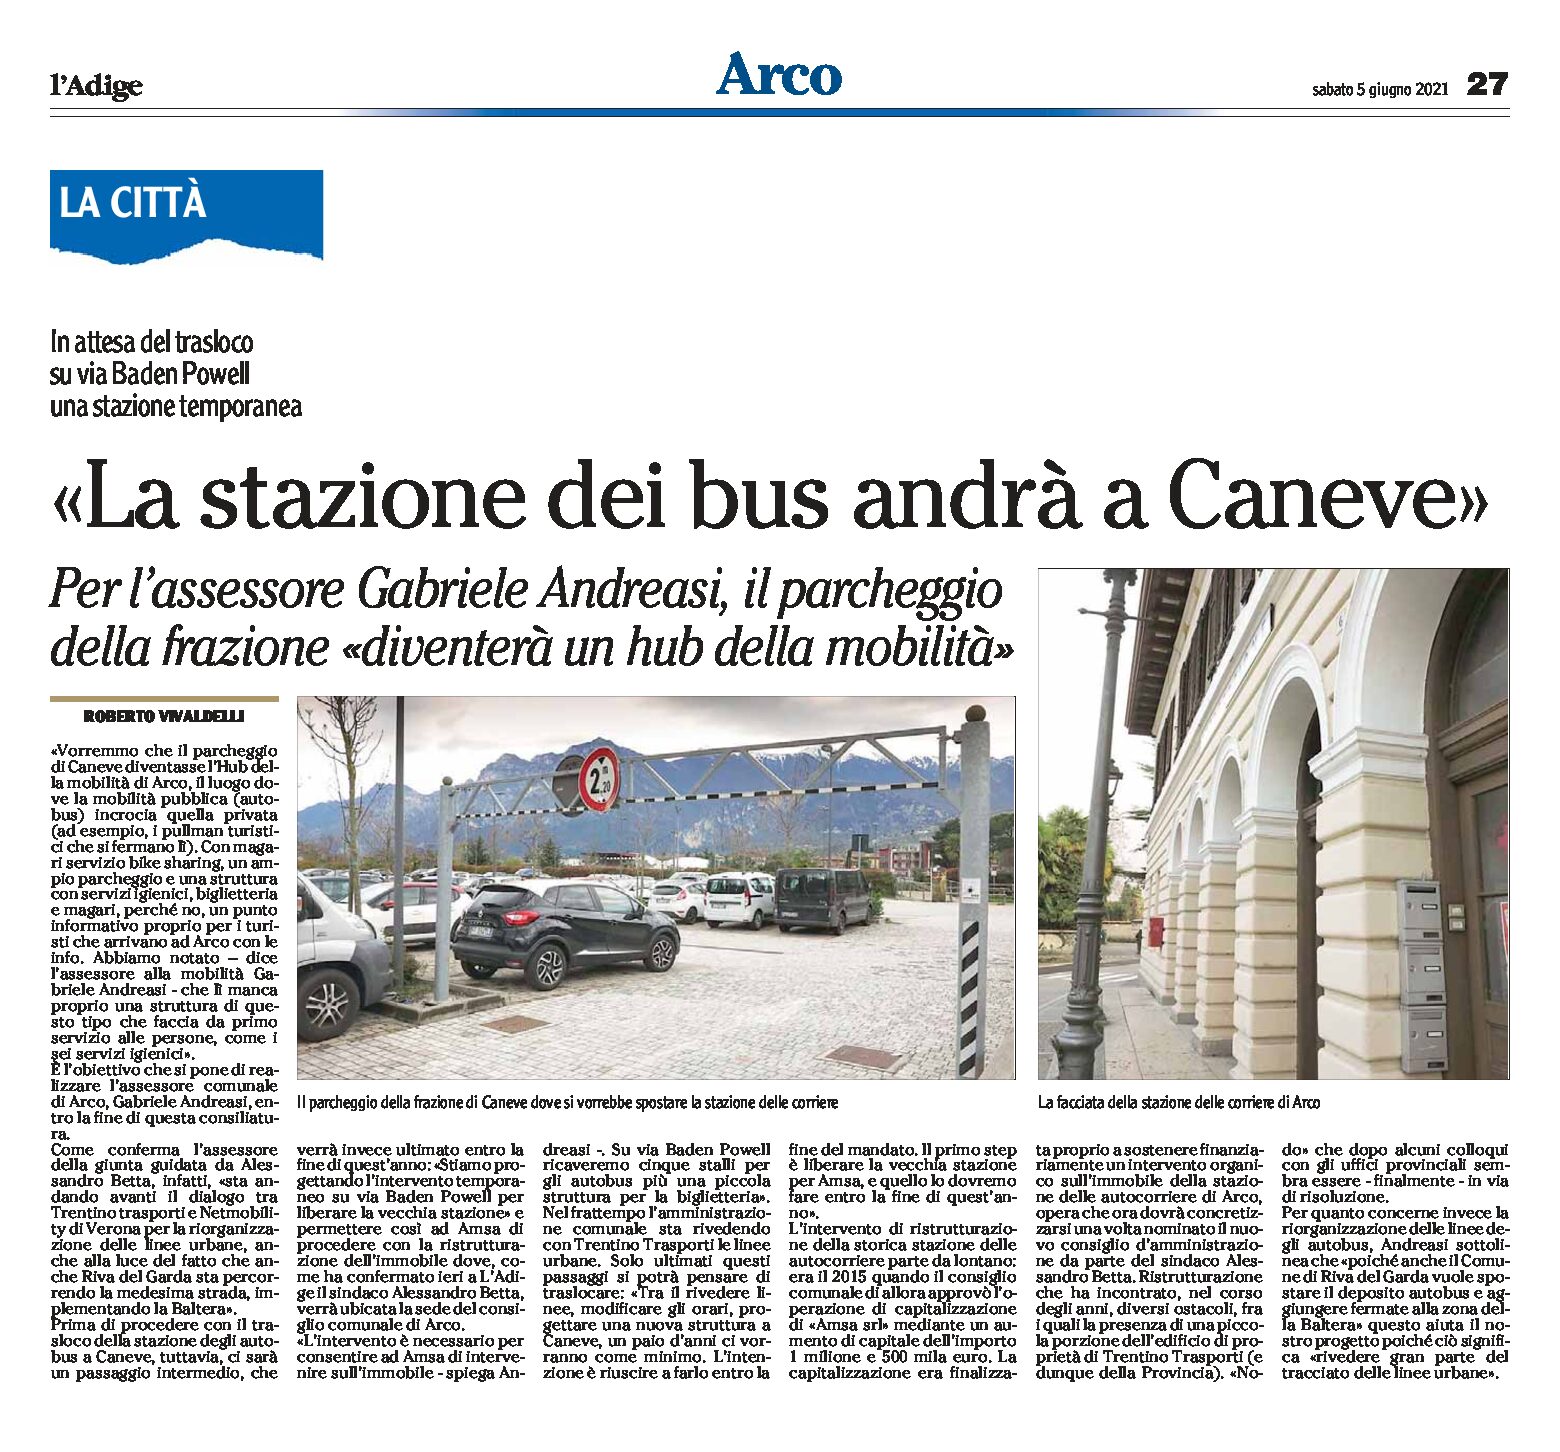 Arco: la stazione delle corriere andrà a Caneve